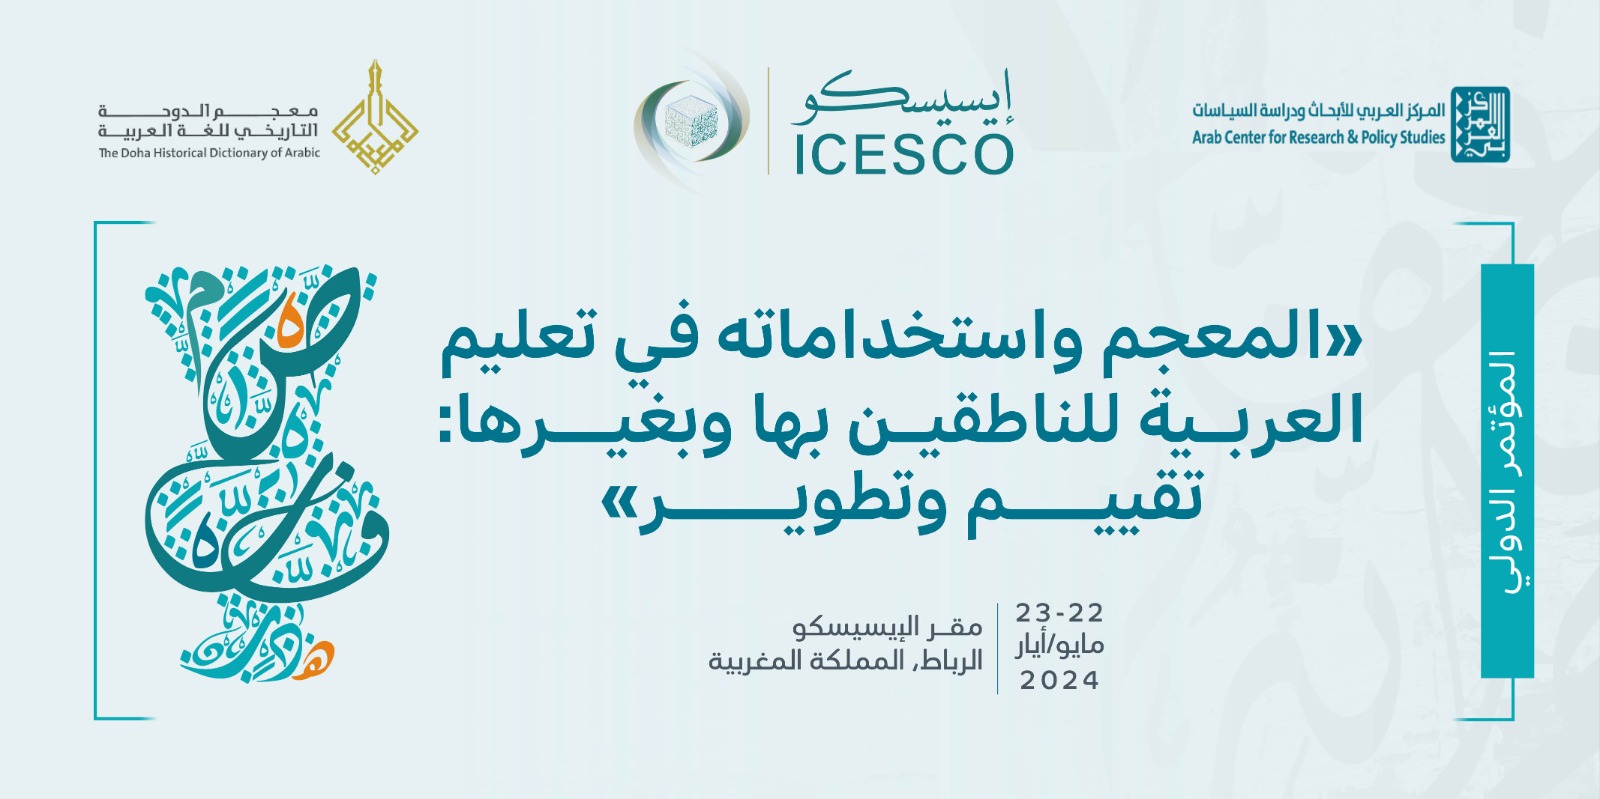 L’ICESCO invite les spécialistes à soumettre des documents de recherche pour participer à la Conférence sur le dictionnaire et ses utilisations dans l’enseignement de la langue arabe